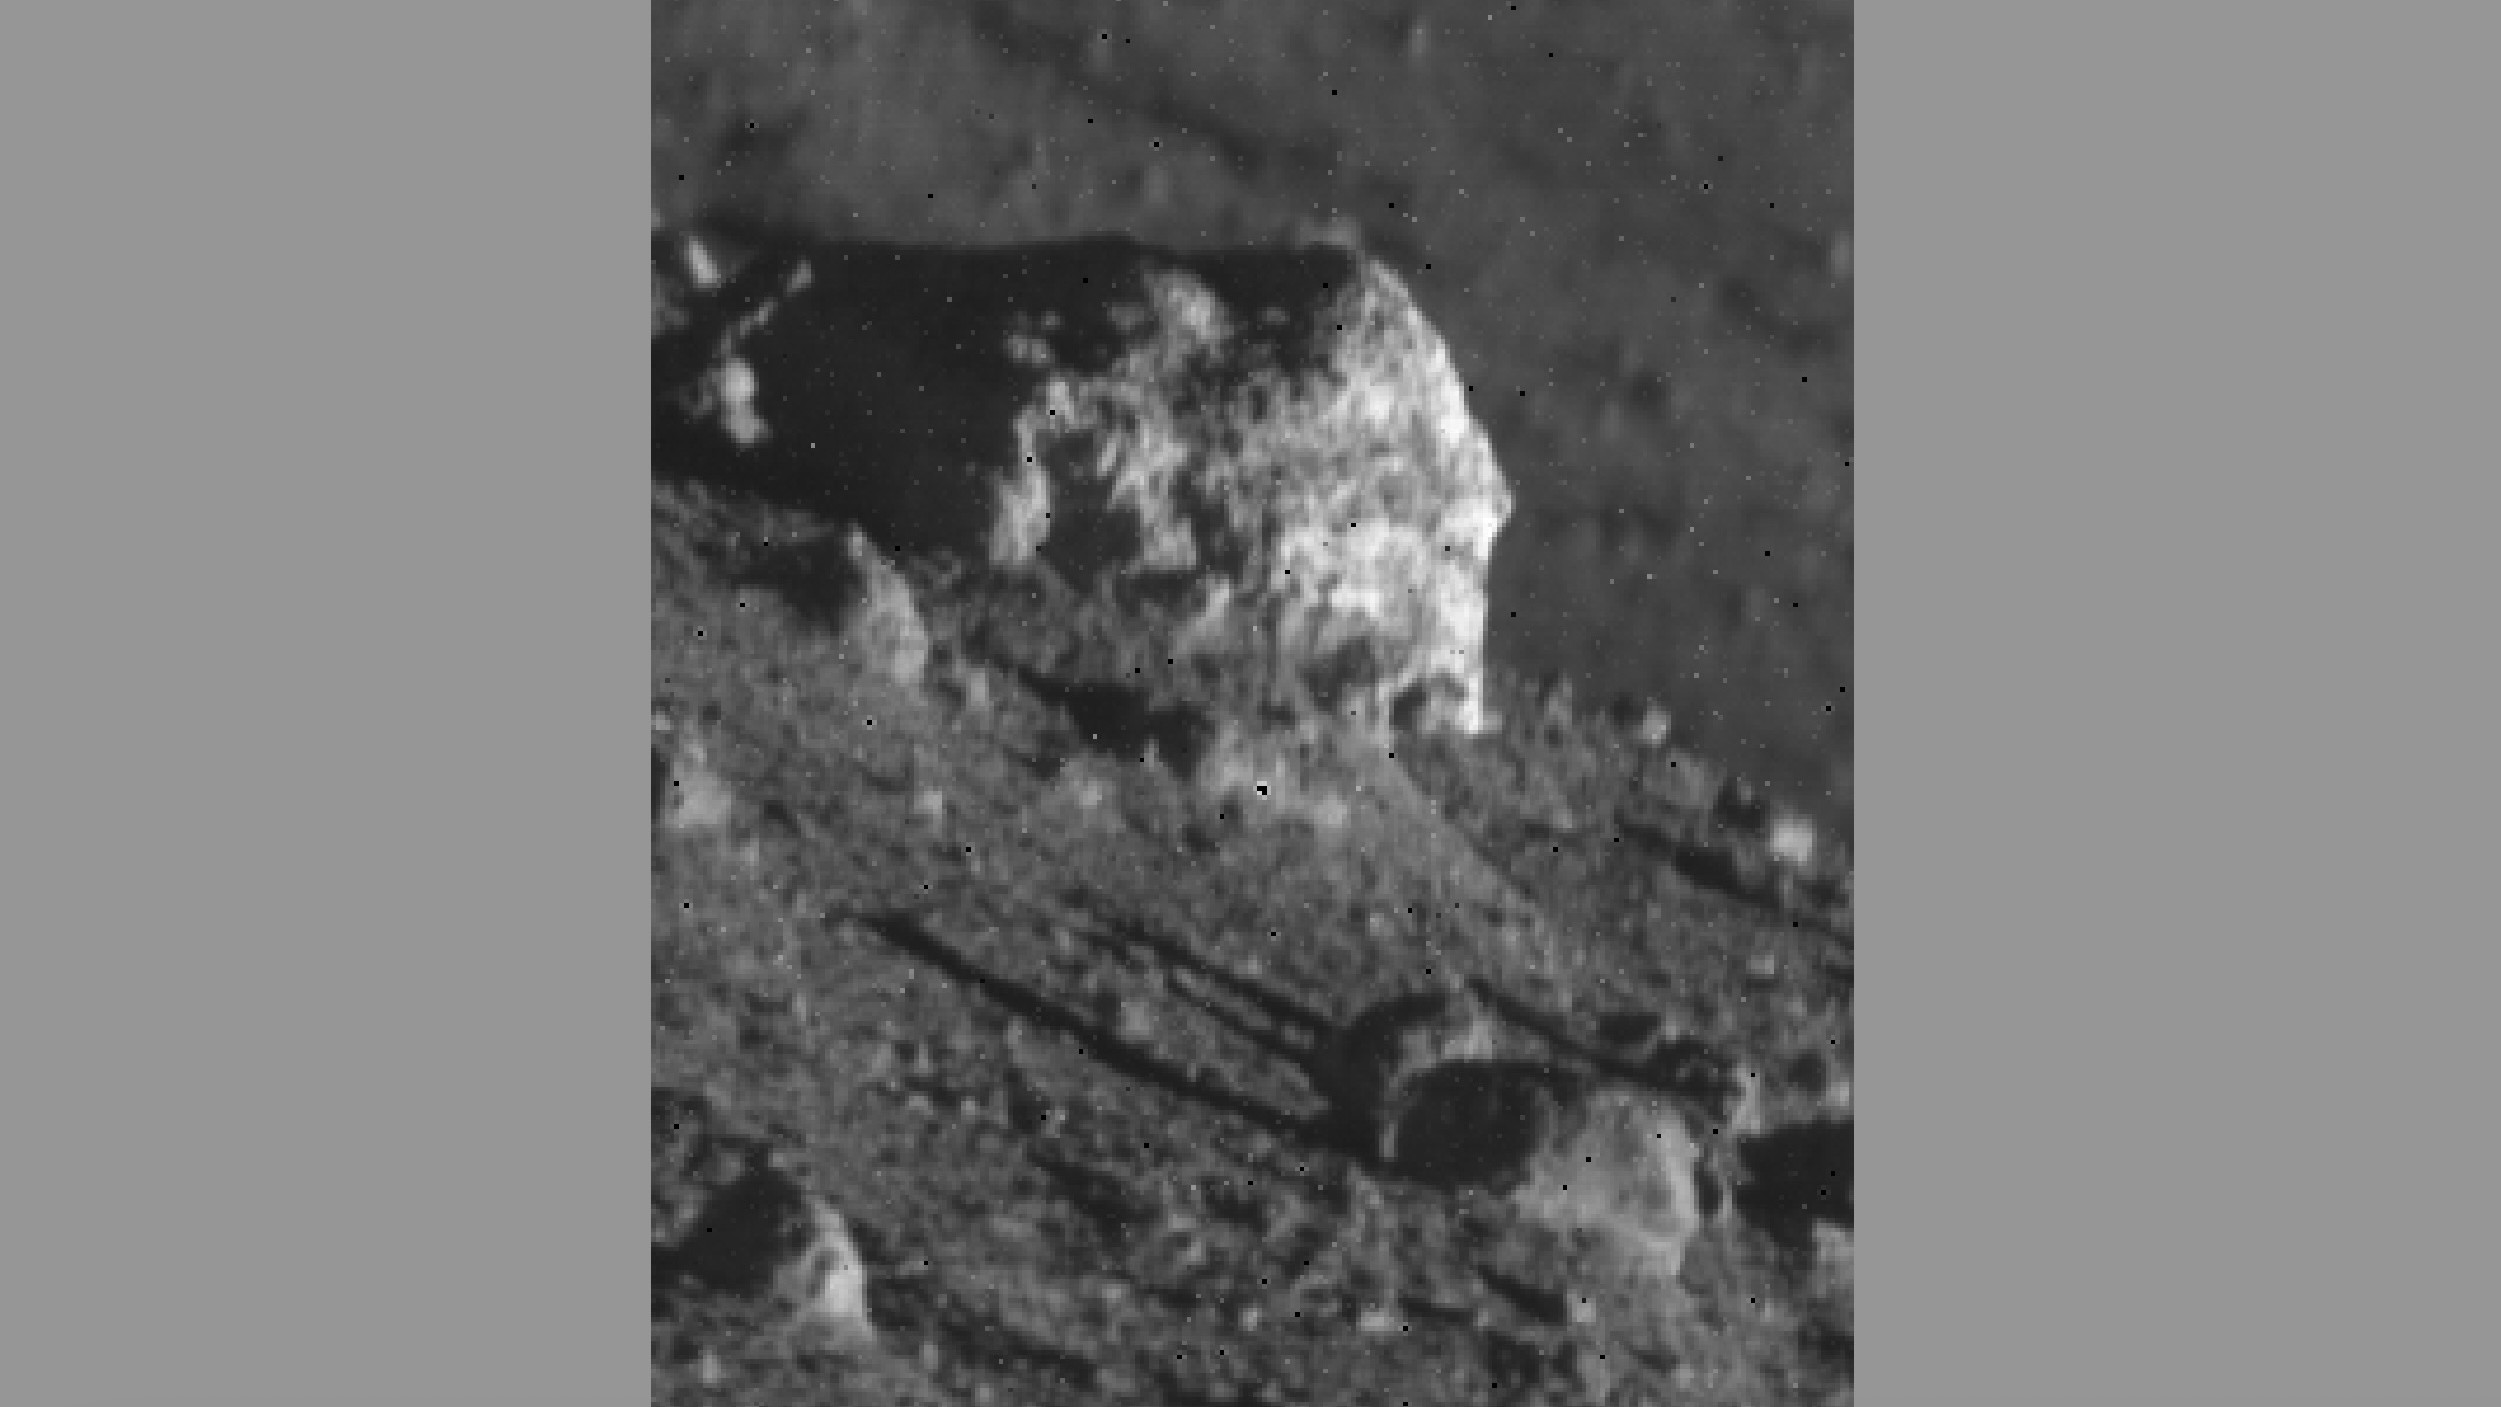 Крупный план большого камня на поверхности Луны, окруженного камнями поменьше.